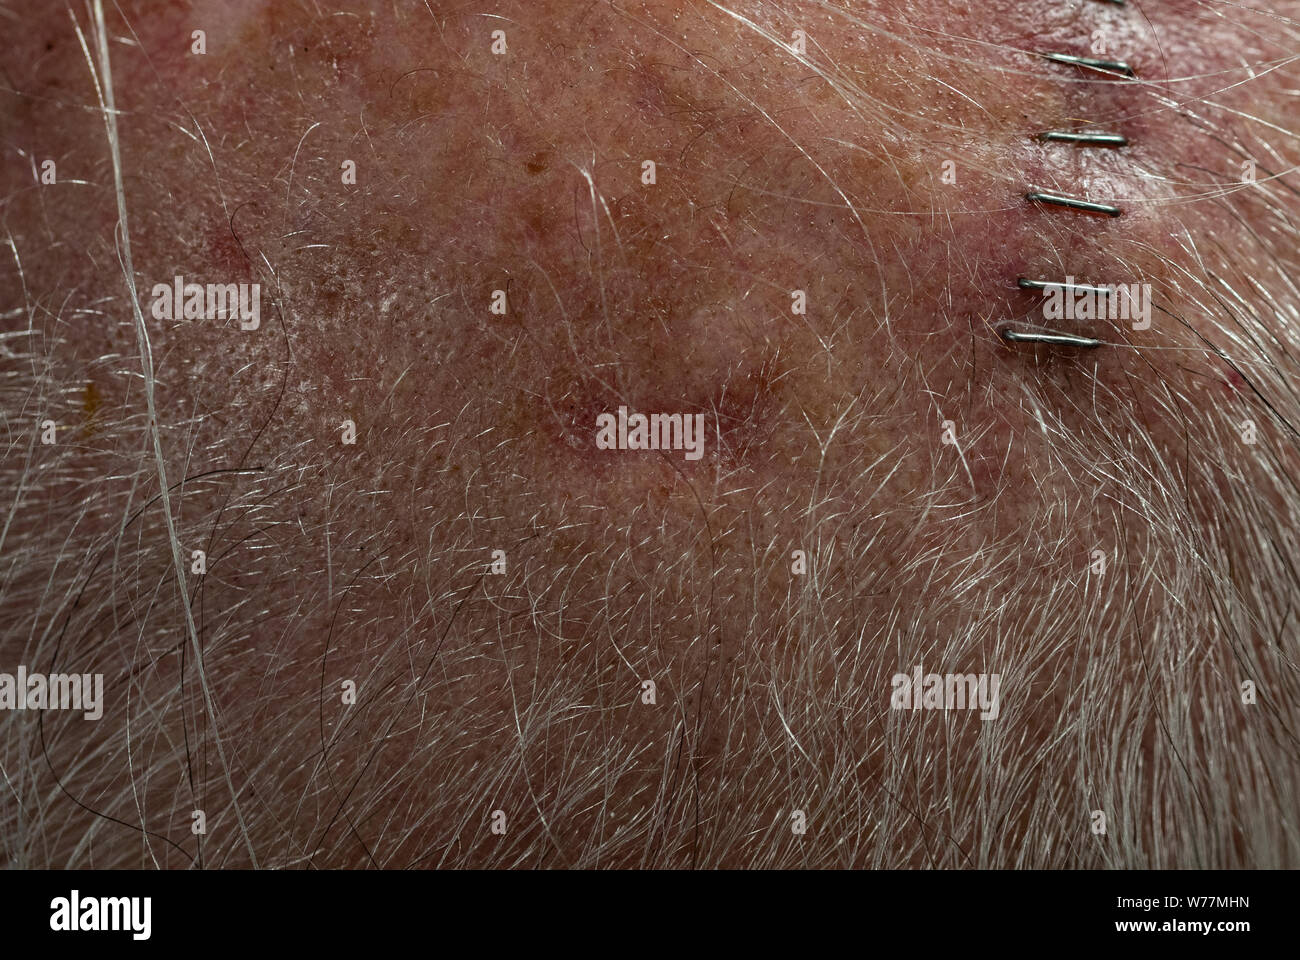 Blick auf 65 Jahre alten männlichen Kopfhaut mit Plattenepithelkarzinom Website (horizontal) in der Mitte entlang Haaransatz. Website ist ca. 3/4', 1/4' hoch. Stockfoto